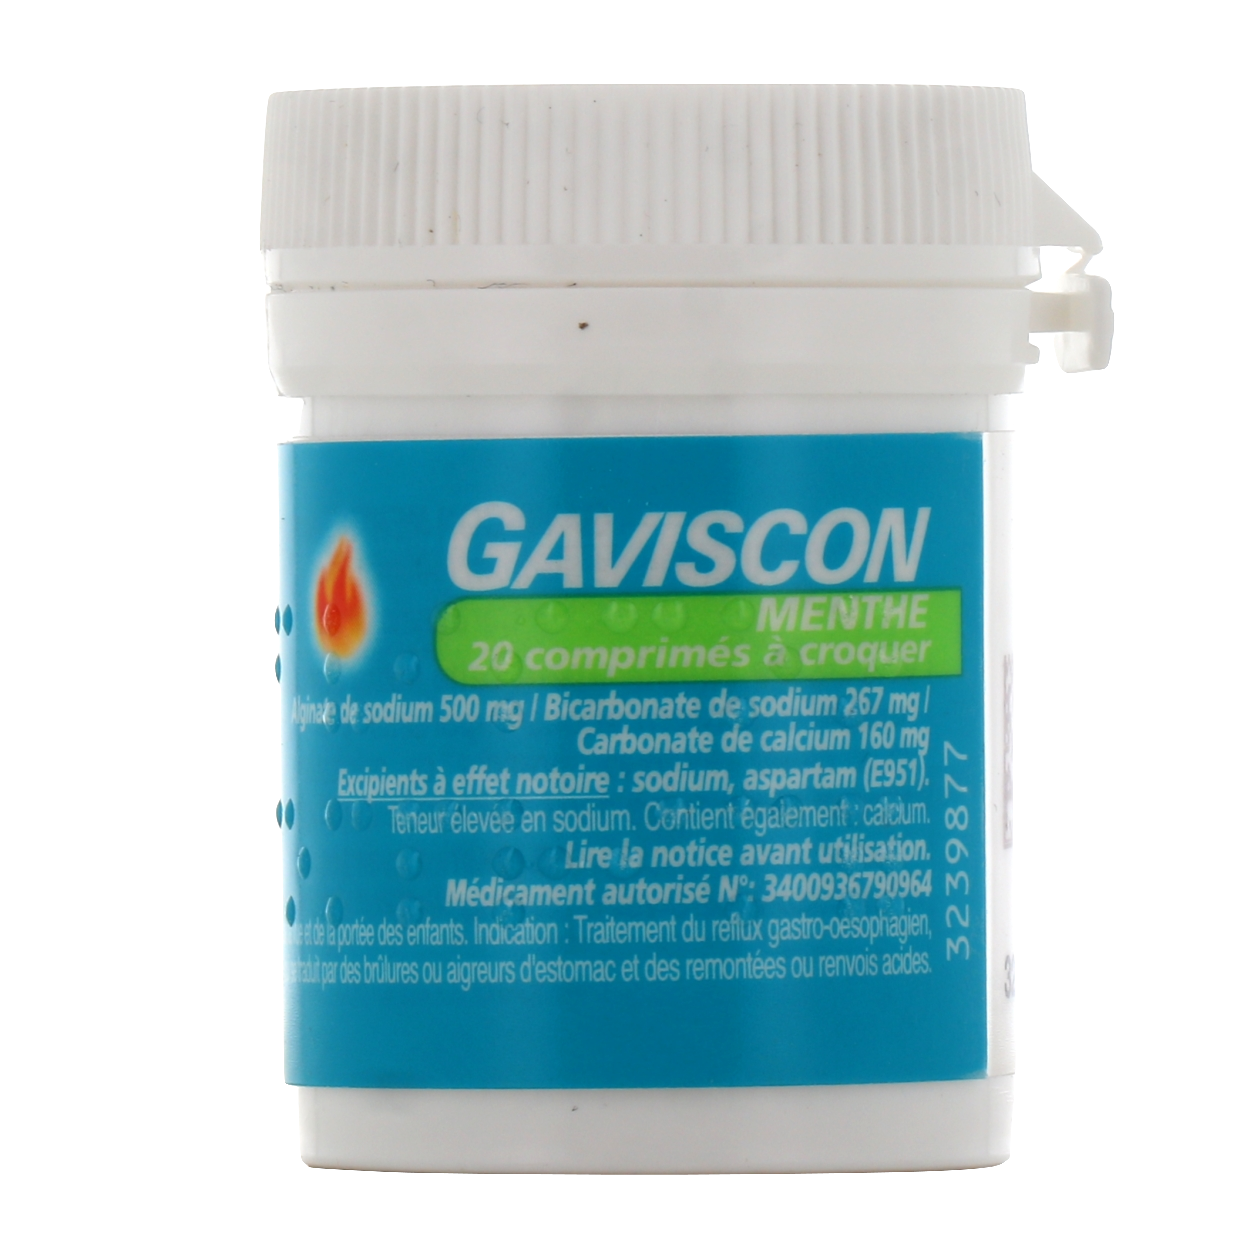 Gaviscon - Brûlures d'estomac, remontées acides